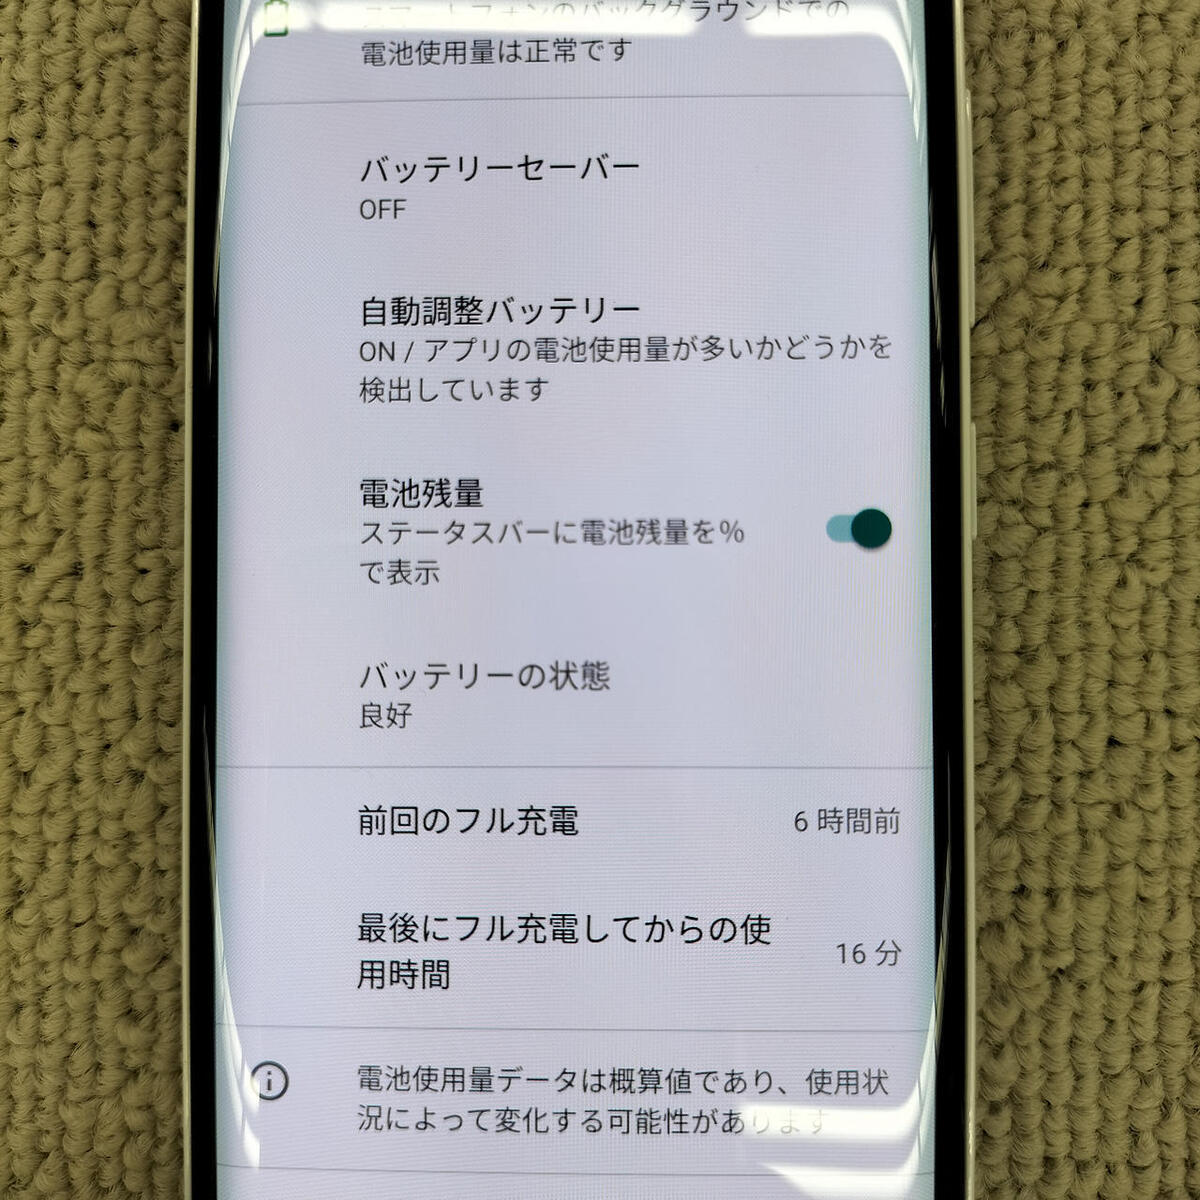 Rakuten Hand 5G Mobile Smartphone | eBay